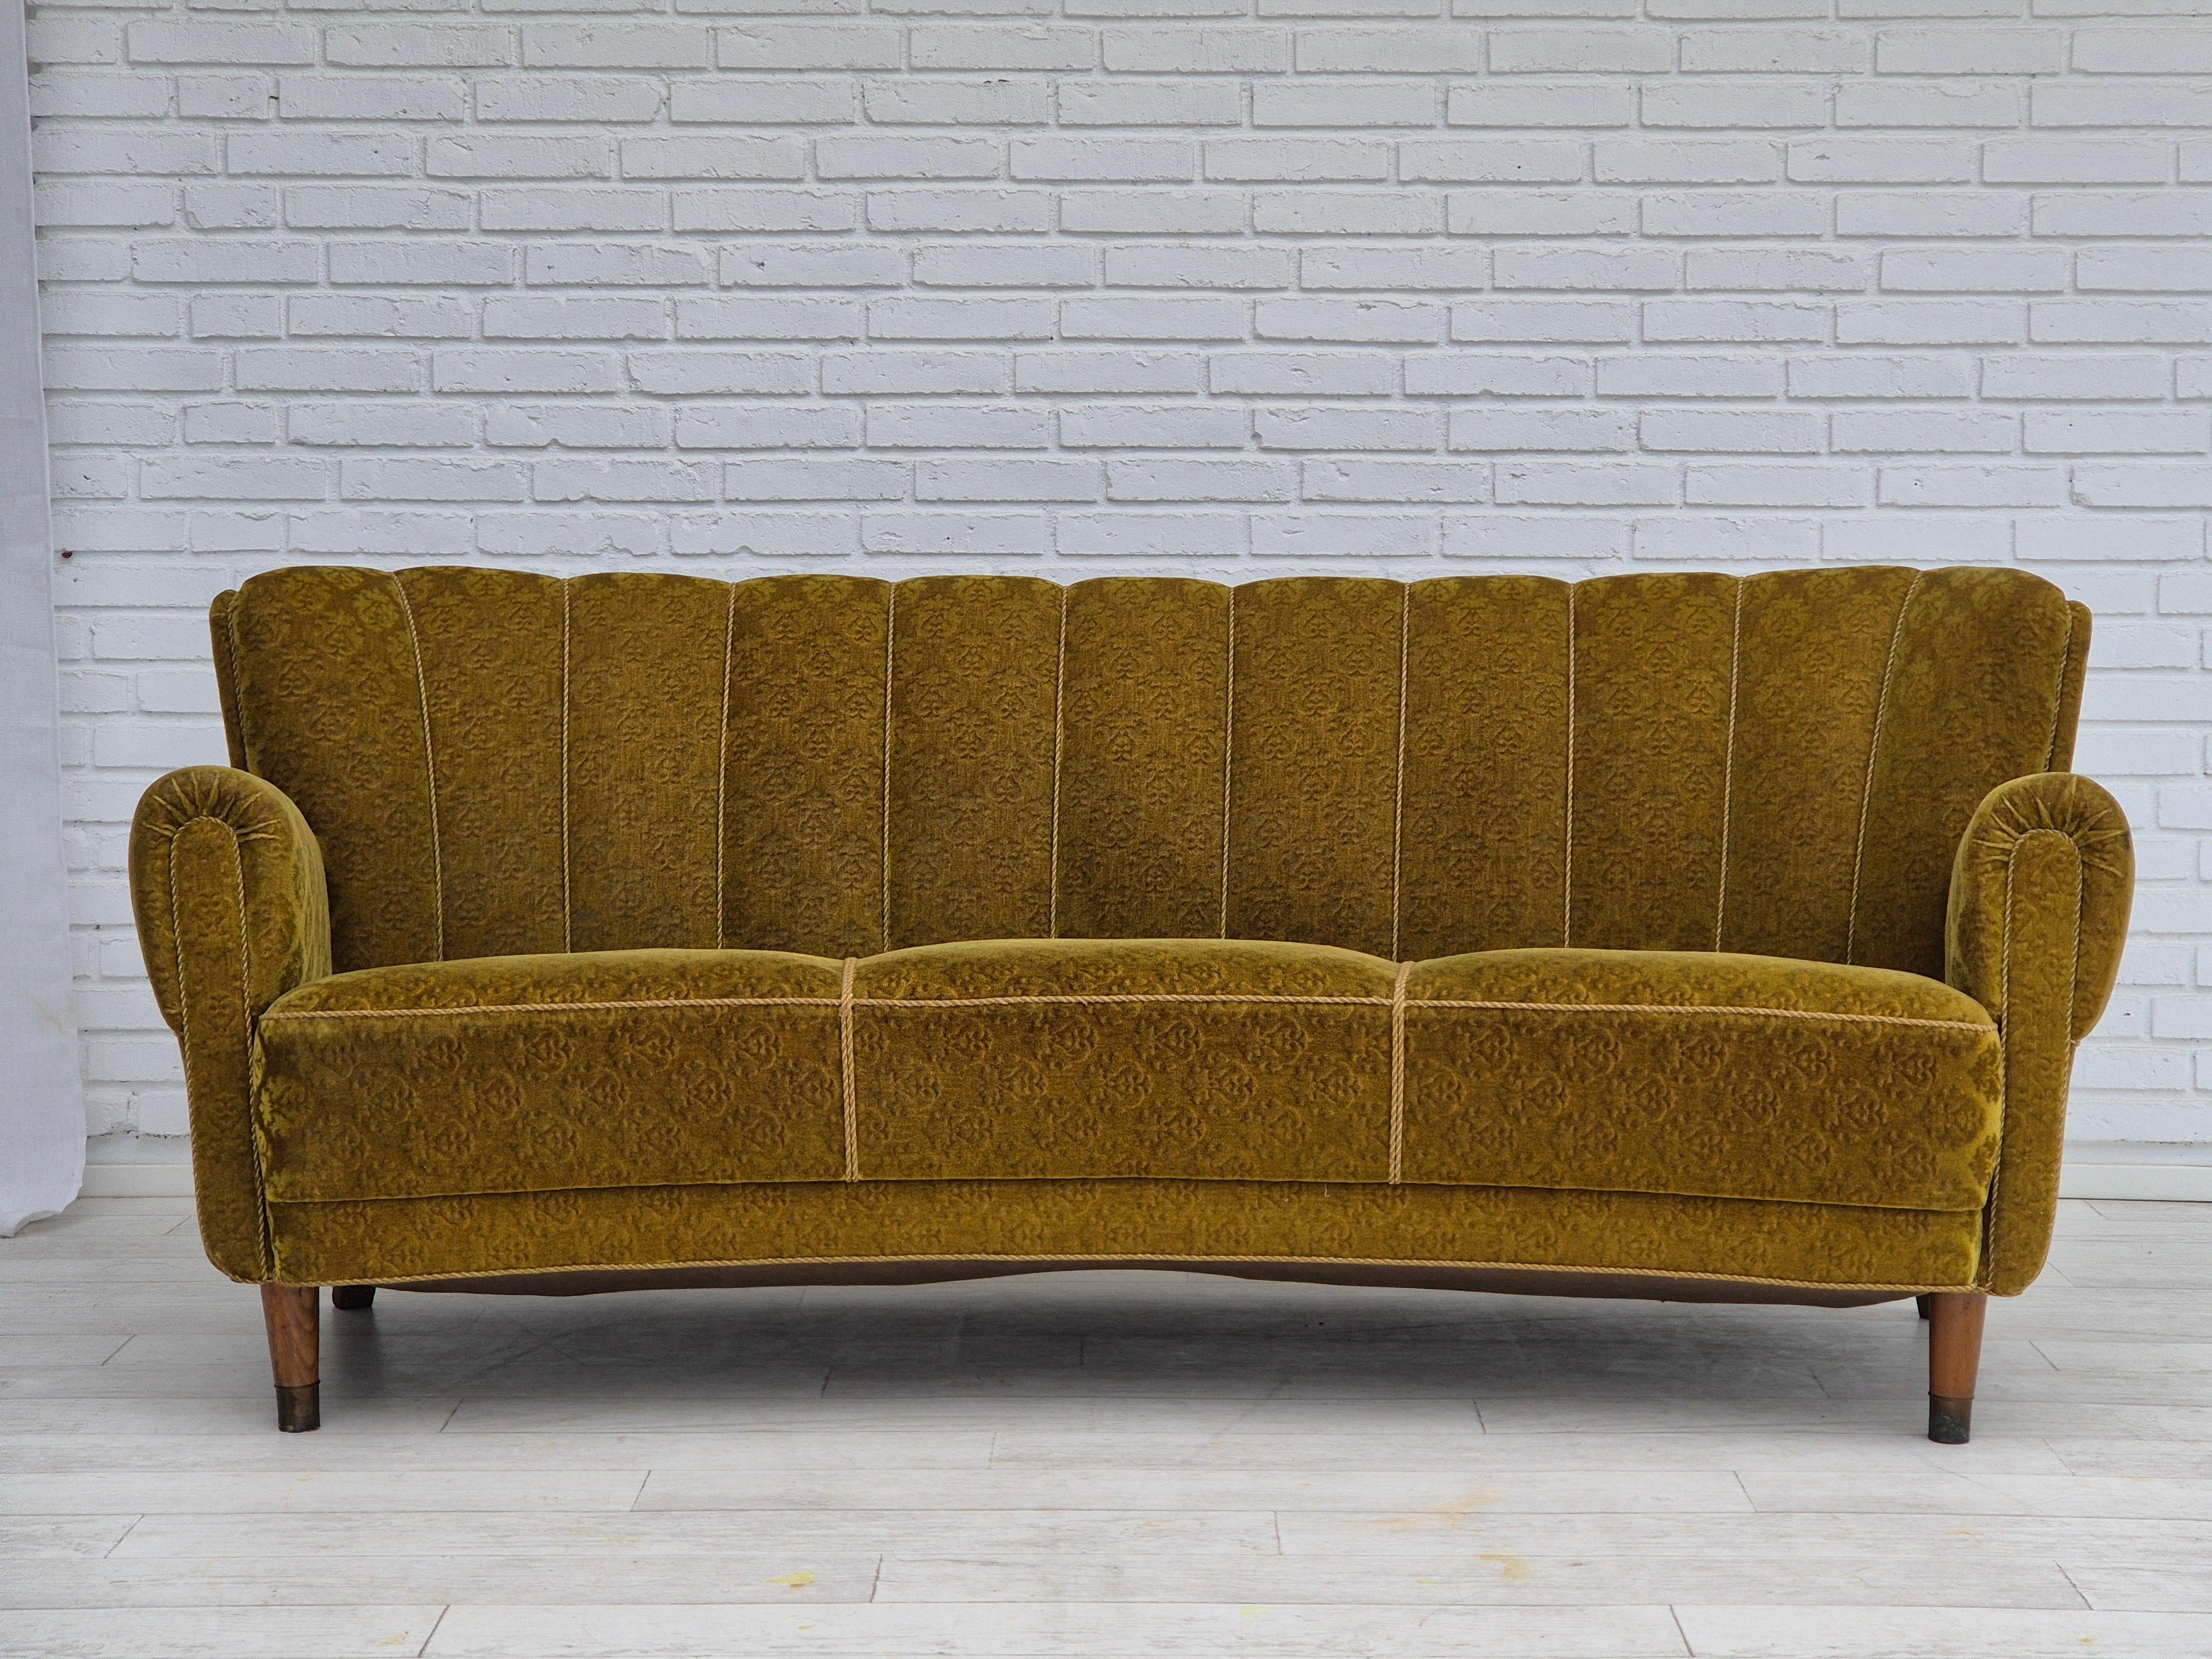 1960s, Danish 3 seater curved sofa in original very good condition : no smells and no stains. Velours d'ameublement vert d'origine, pieds en bois de hêtre avec fiches en laiton. Ressorts en laiton dans le siège. Fabriqué par un fabricant de meubles